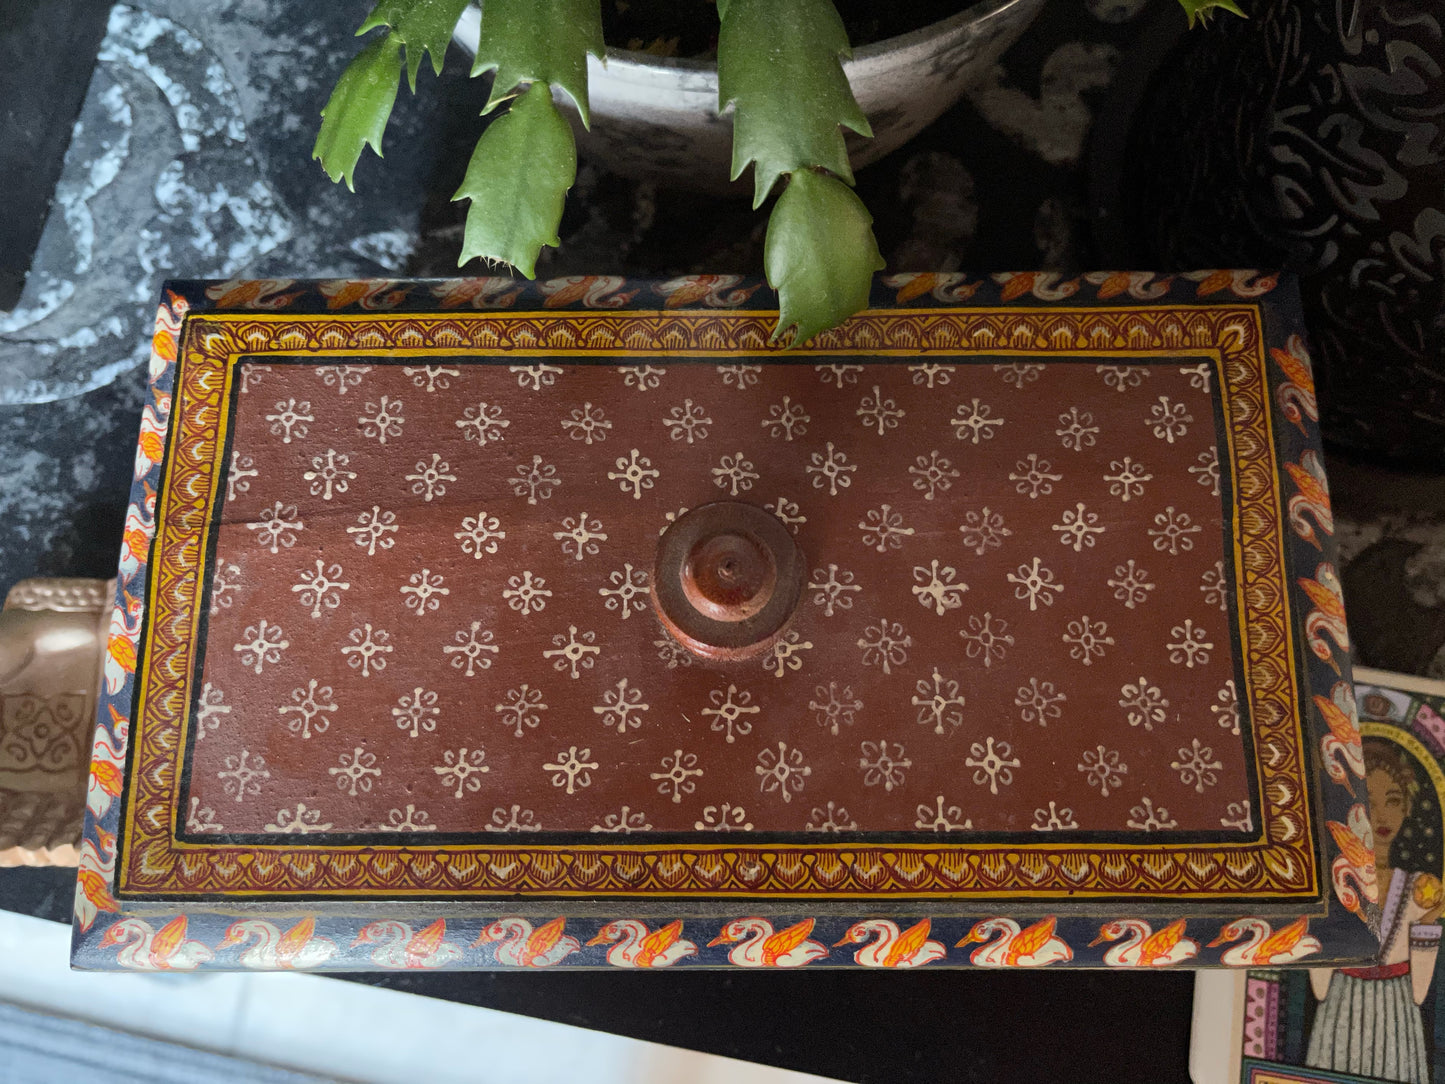 Spirited Gypsy Tarot Card Box, Home Decor